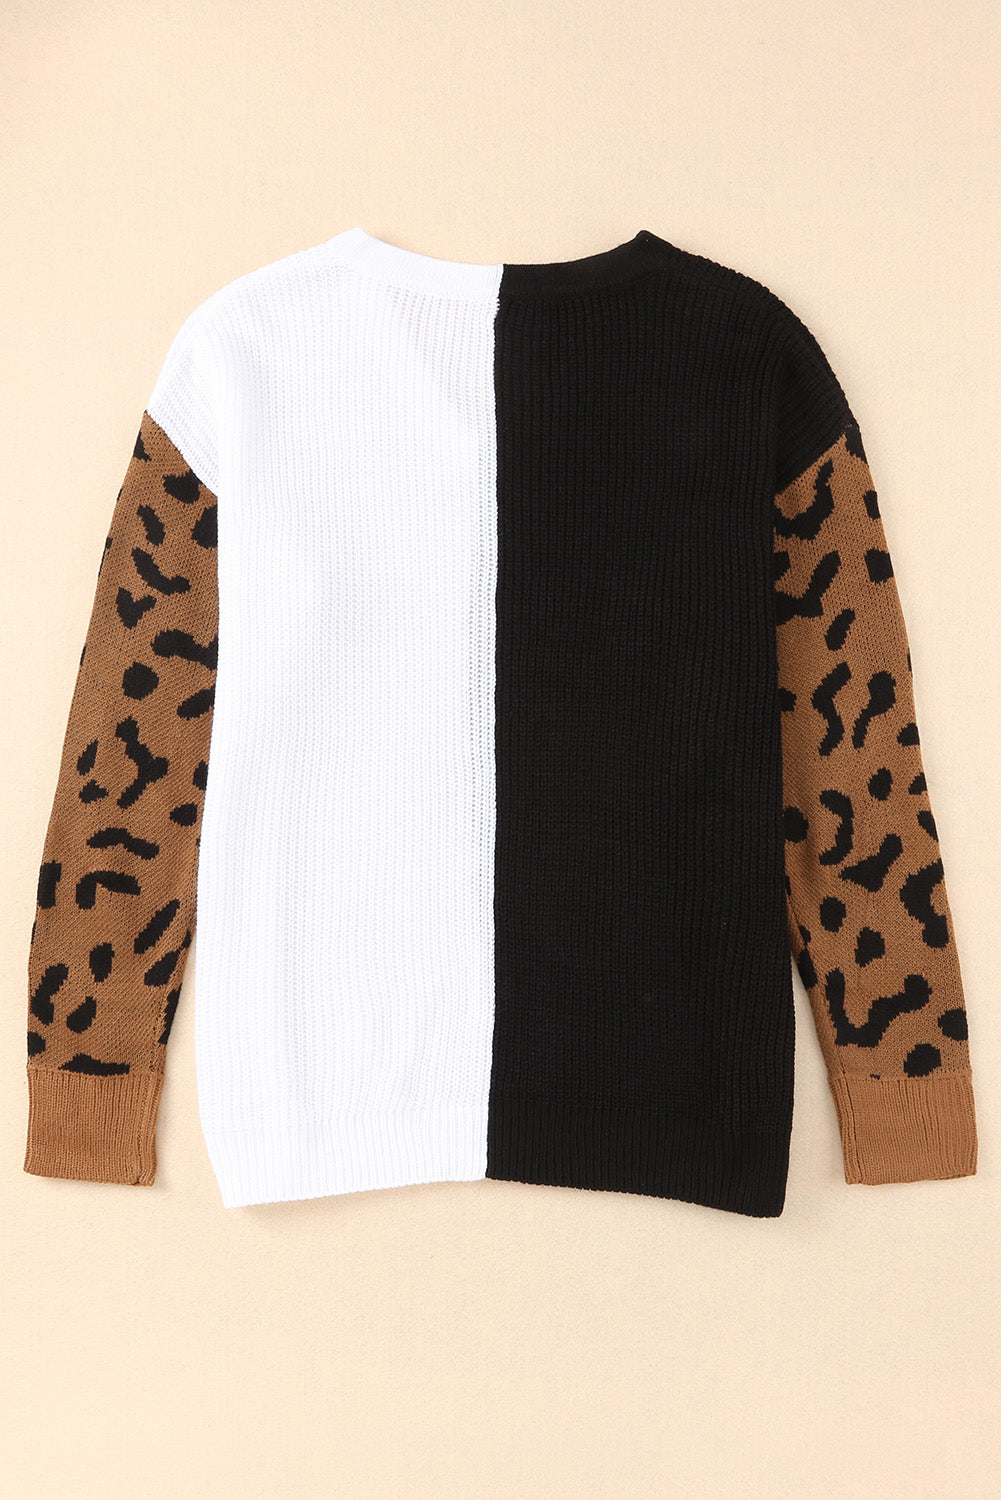 Pulover s V izrezom kontrastne boje s uzorkom leoparda